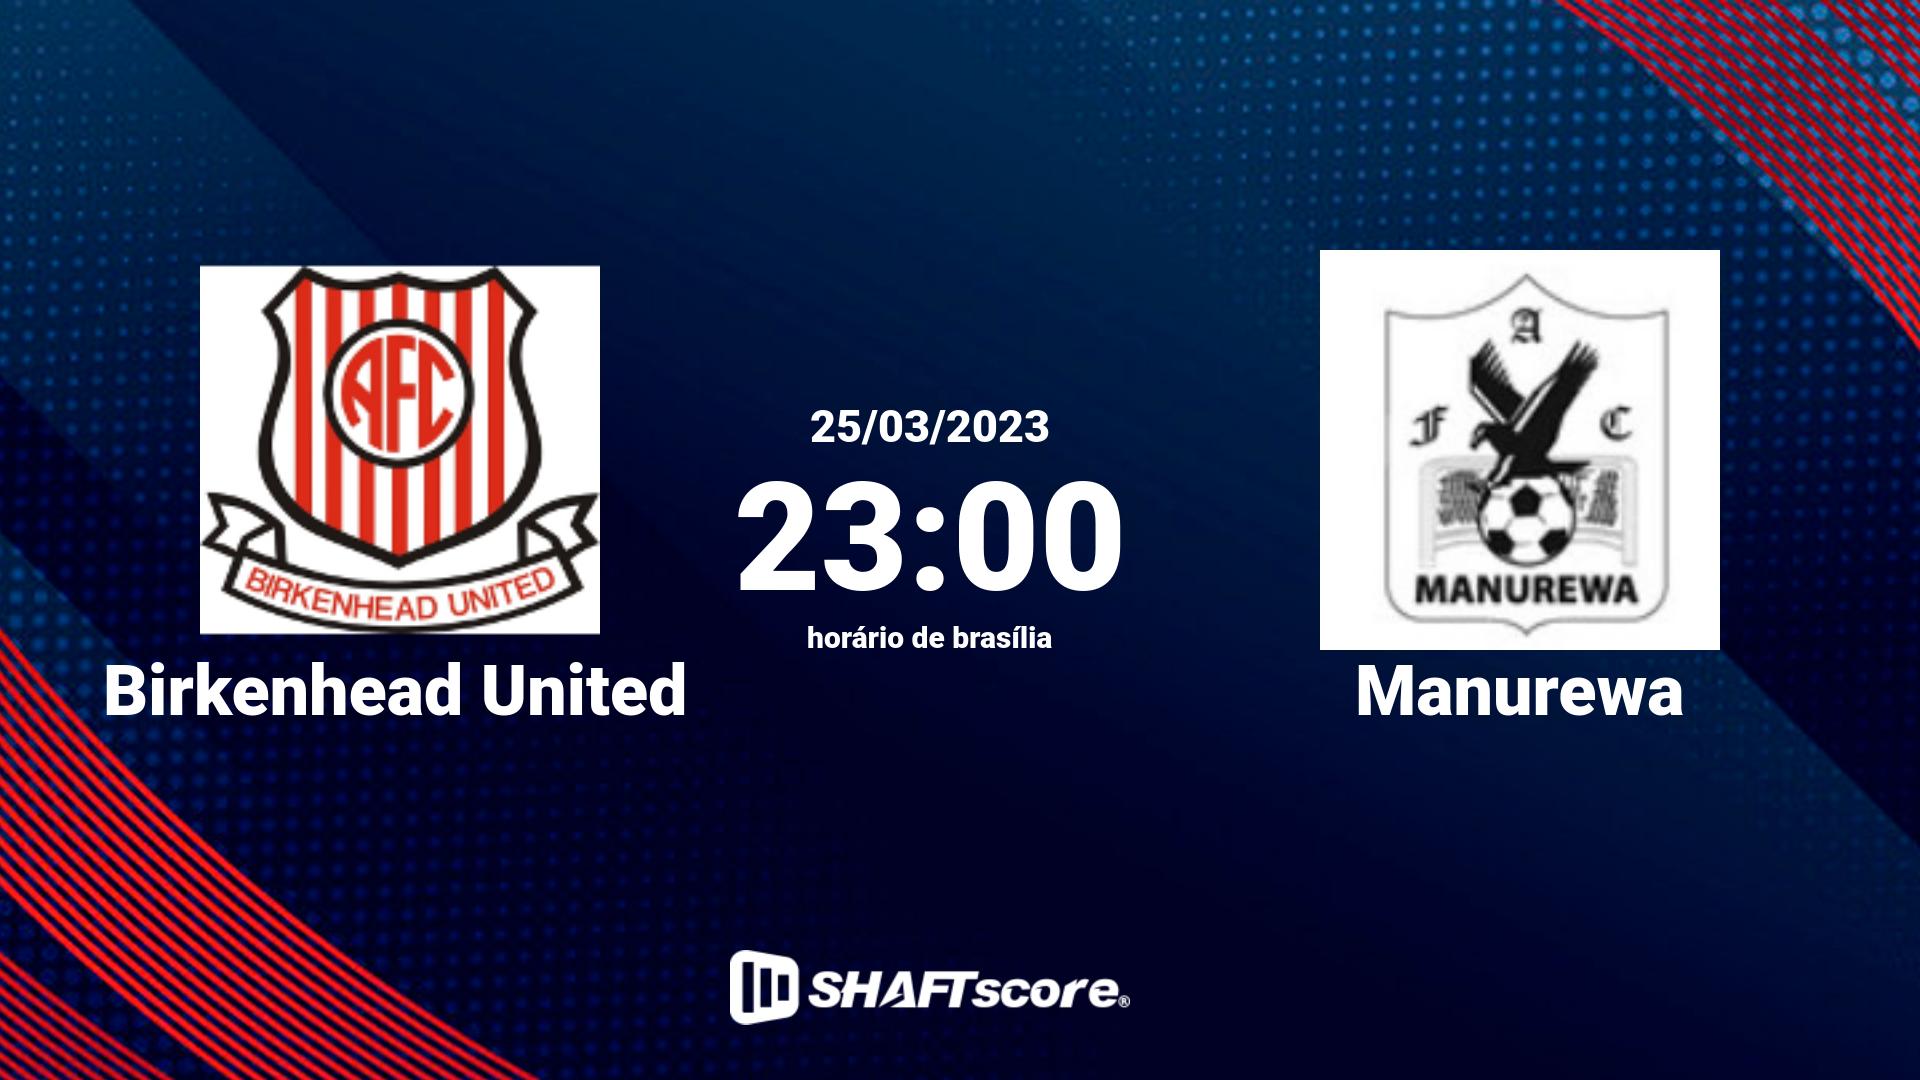 Estatísticas do jogo Birkenhead United vs Manurewa 25.03 23:00